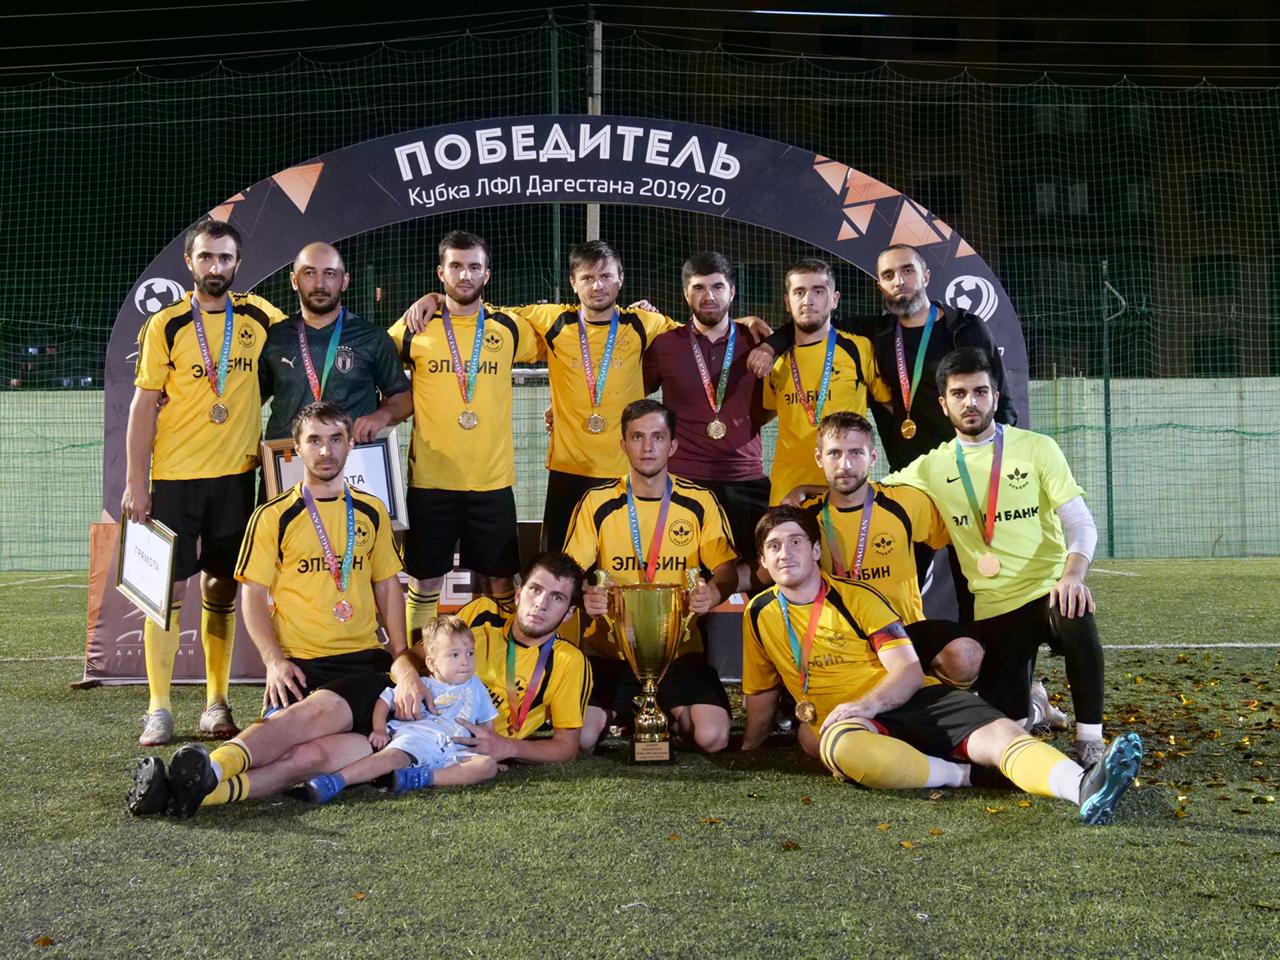 Кубок Любительской футбольной лиги Дагестана выиграл «Эльбин» из  Махачкалы